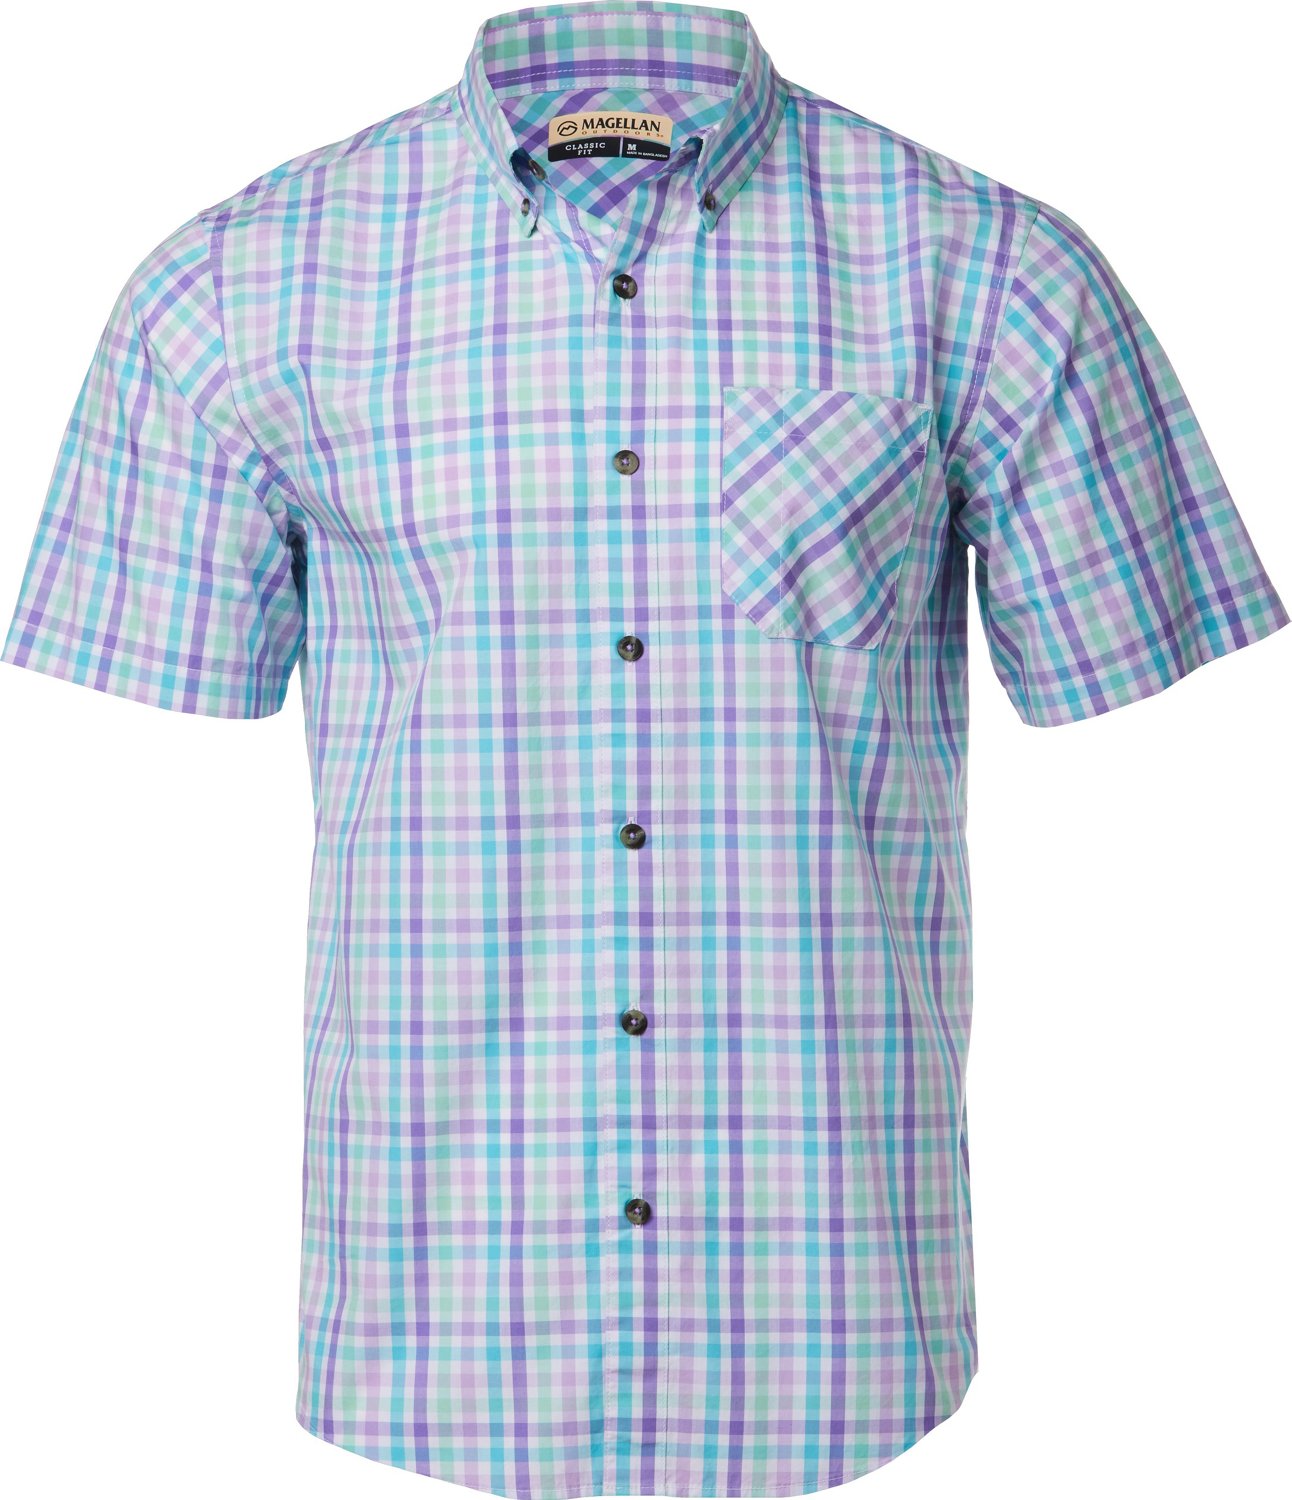 Magellan Outdoors Men's Summerville Plaid Short Sleeve Shirt | Academy